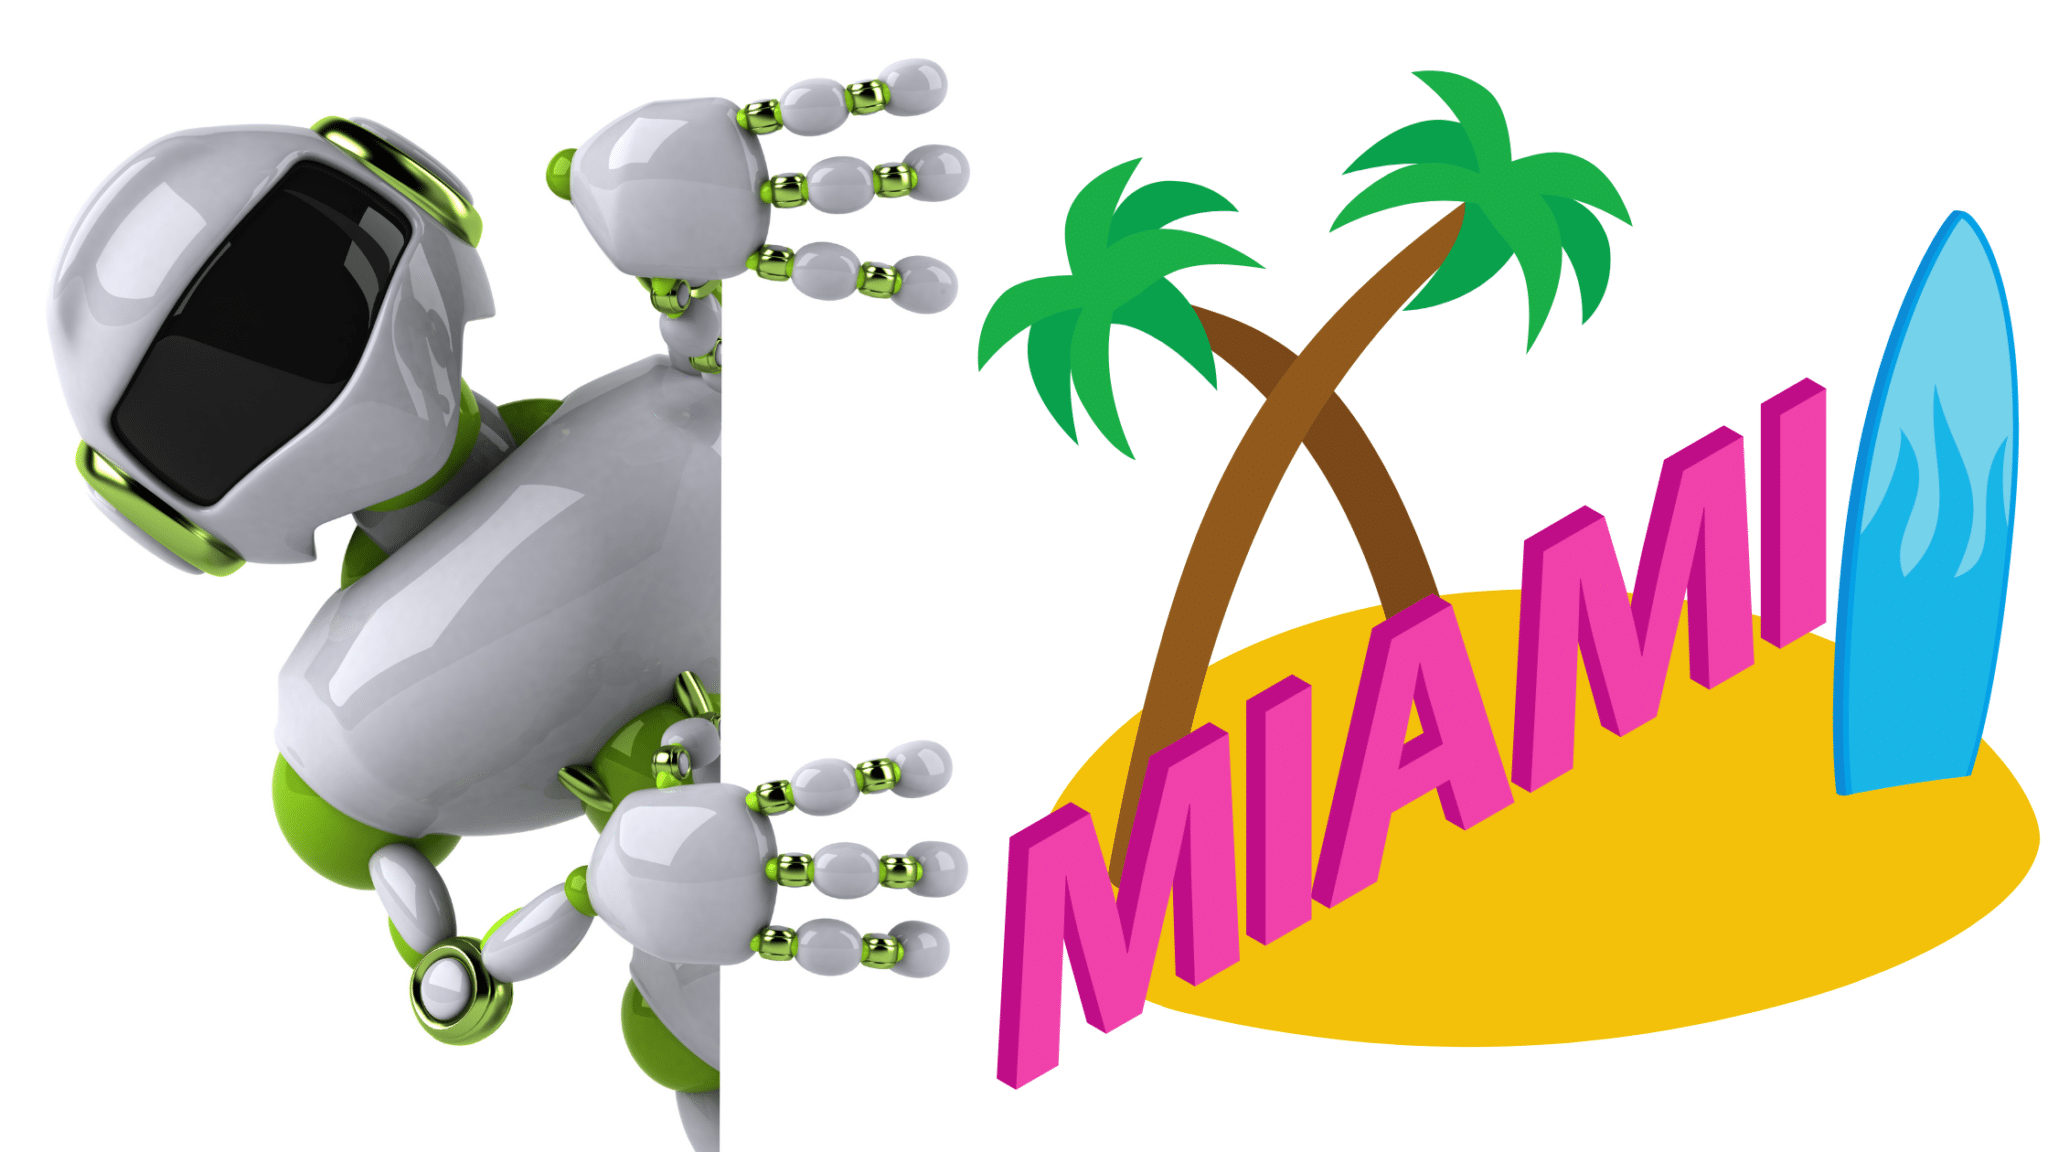 Miami - MiamiTech and Miami Lifestyle